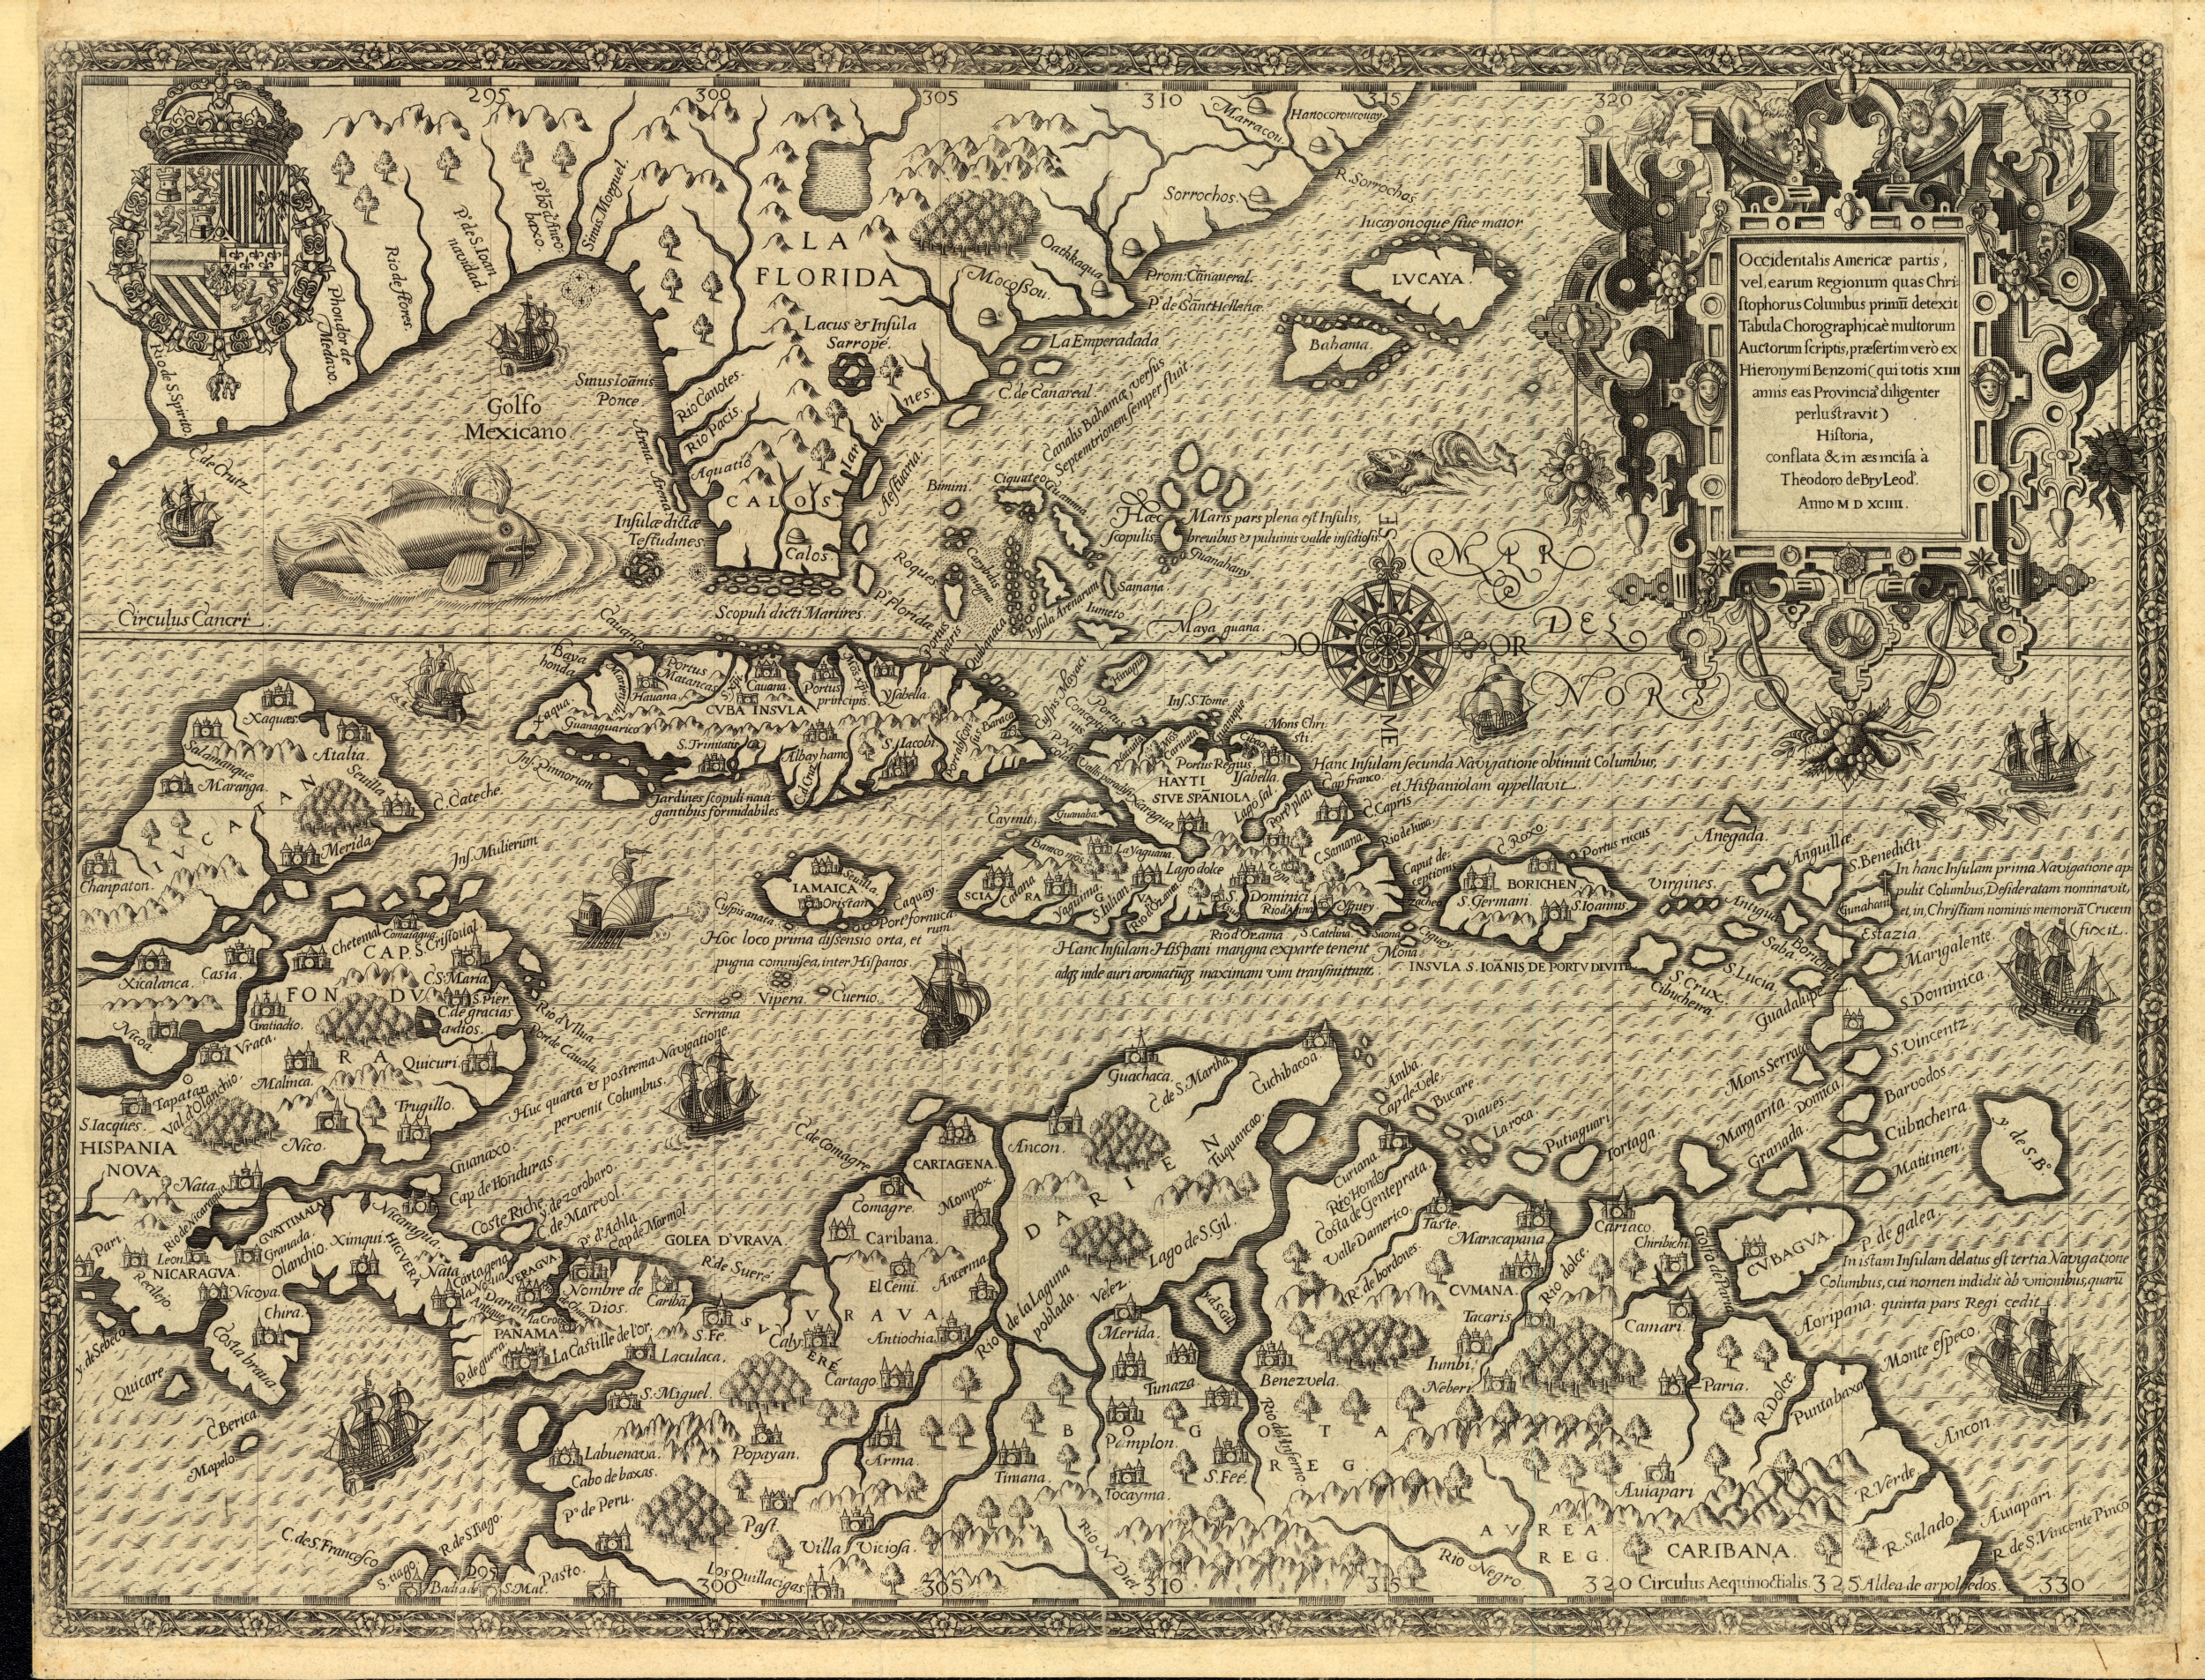 West Indies, 1594